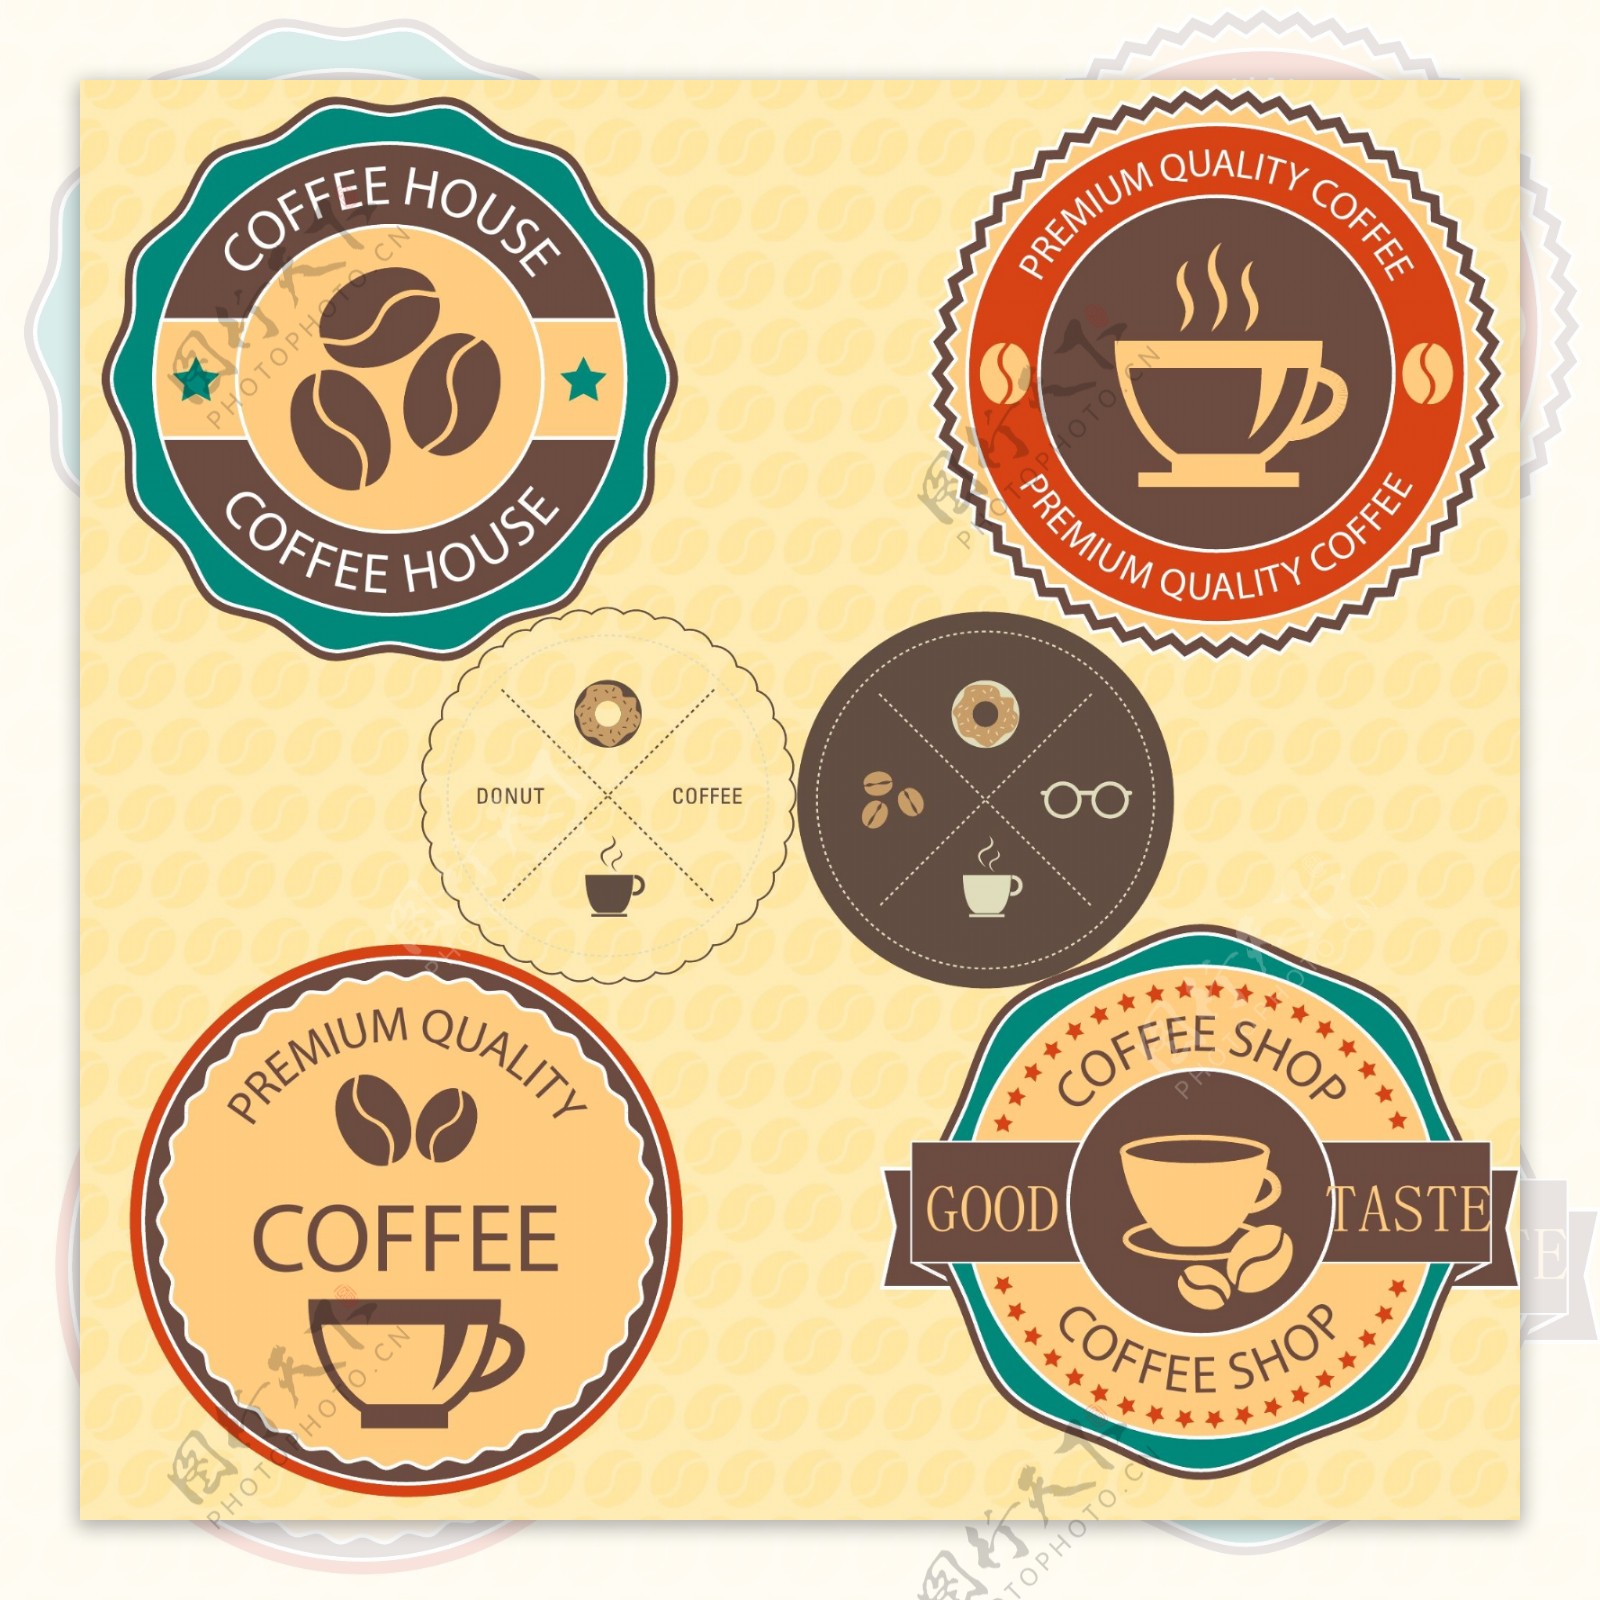 徽章样式的咖啡标志素材